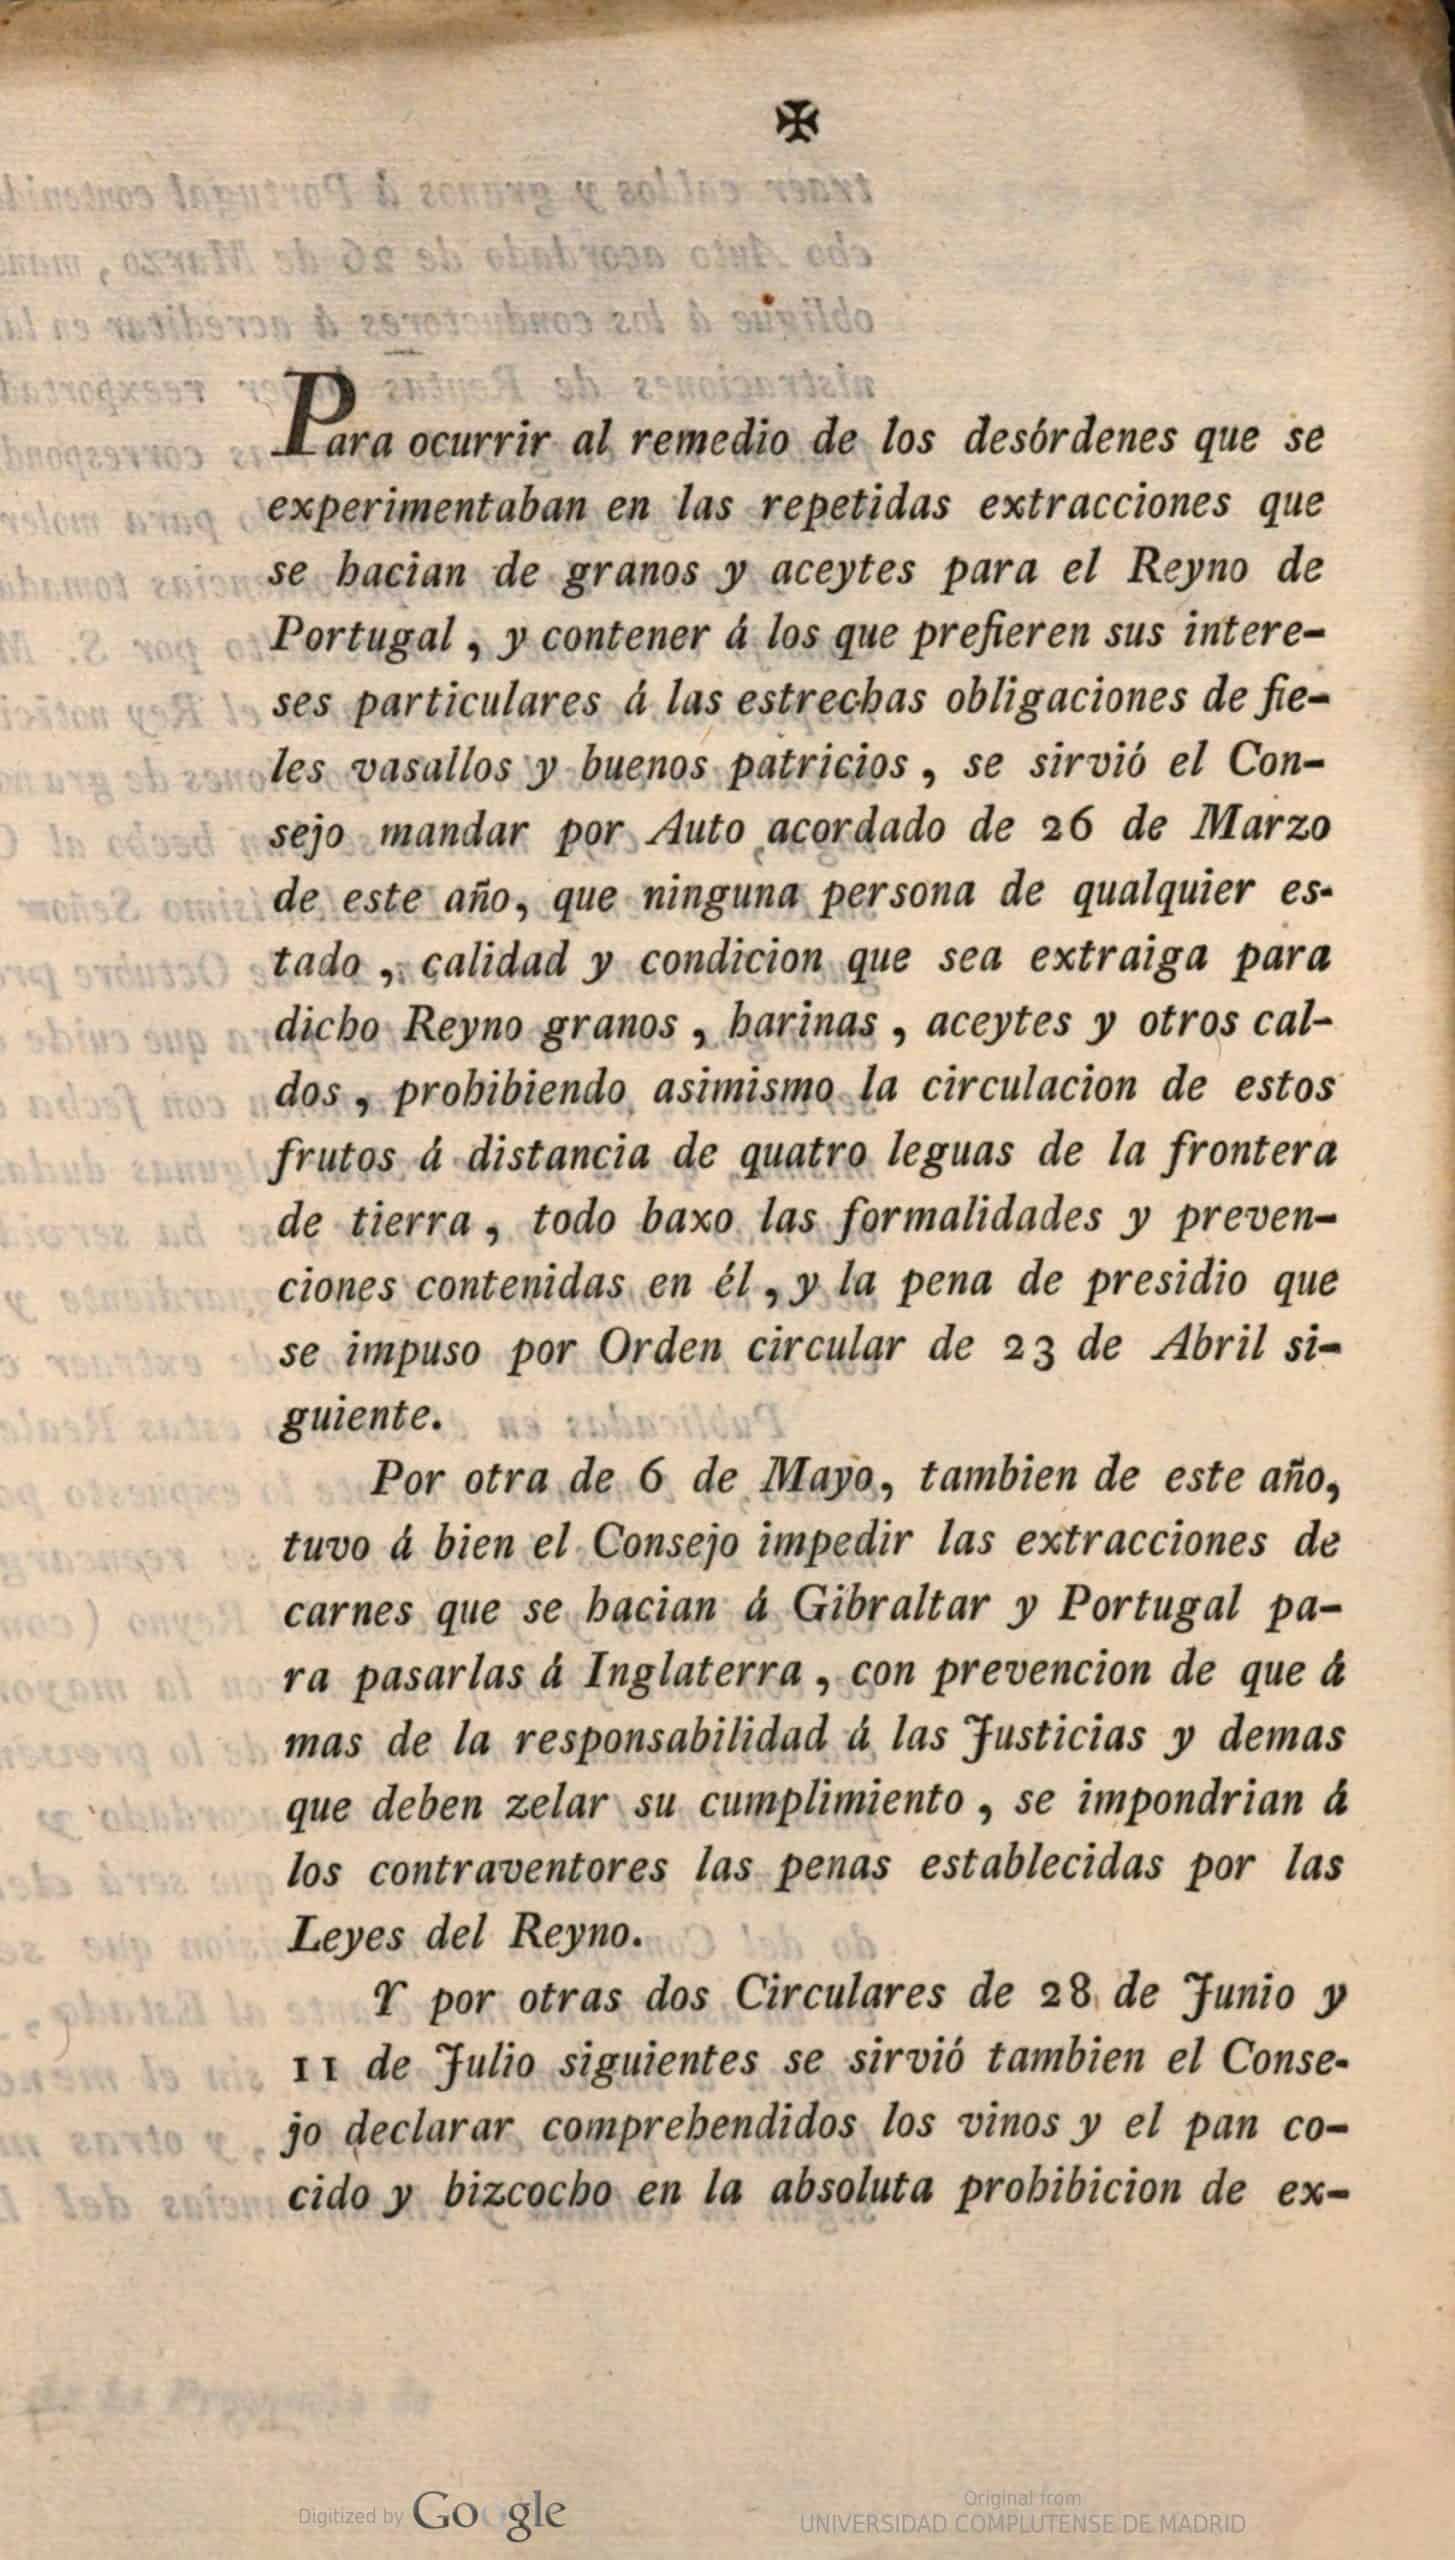 [Auto acordado] Prohibición de extraer harina, aceite y caldos… Madrid 14 de Noviembre de 1800